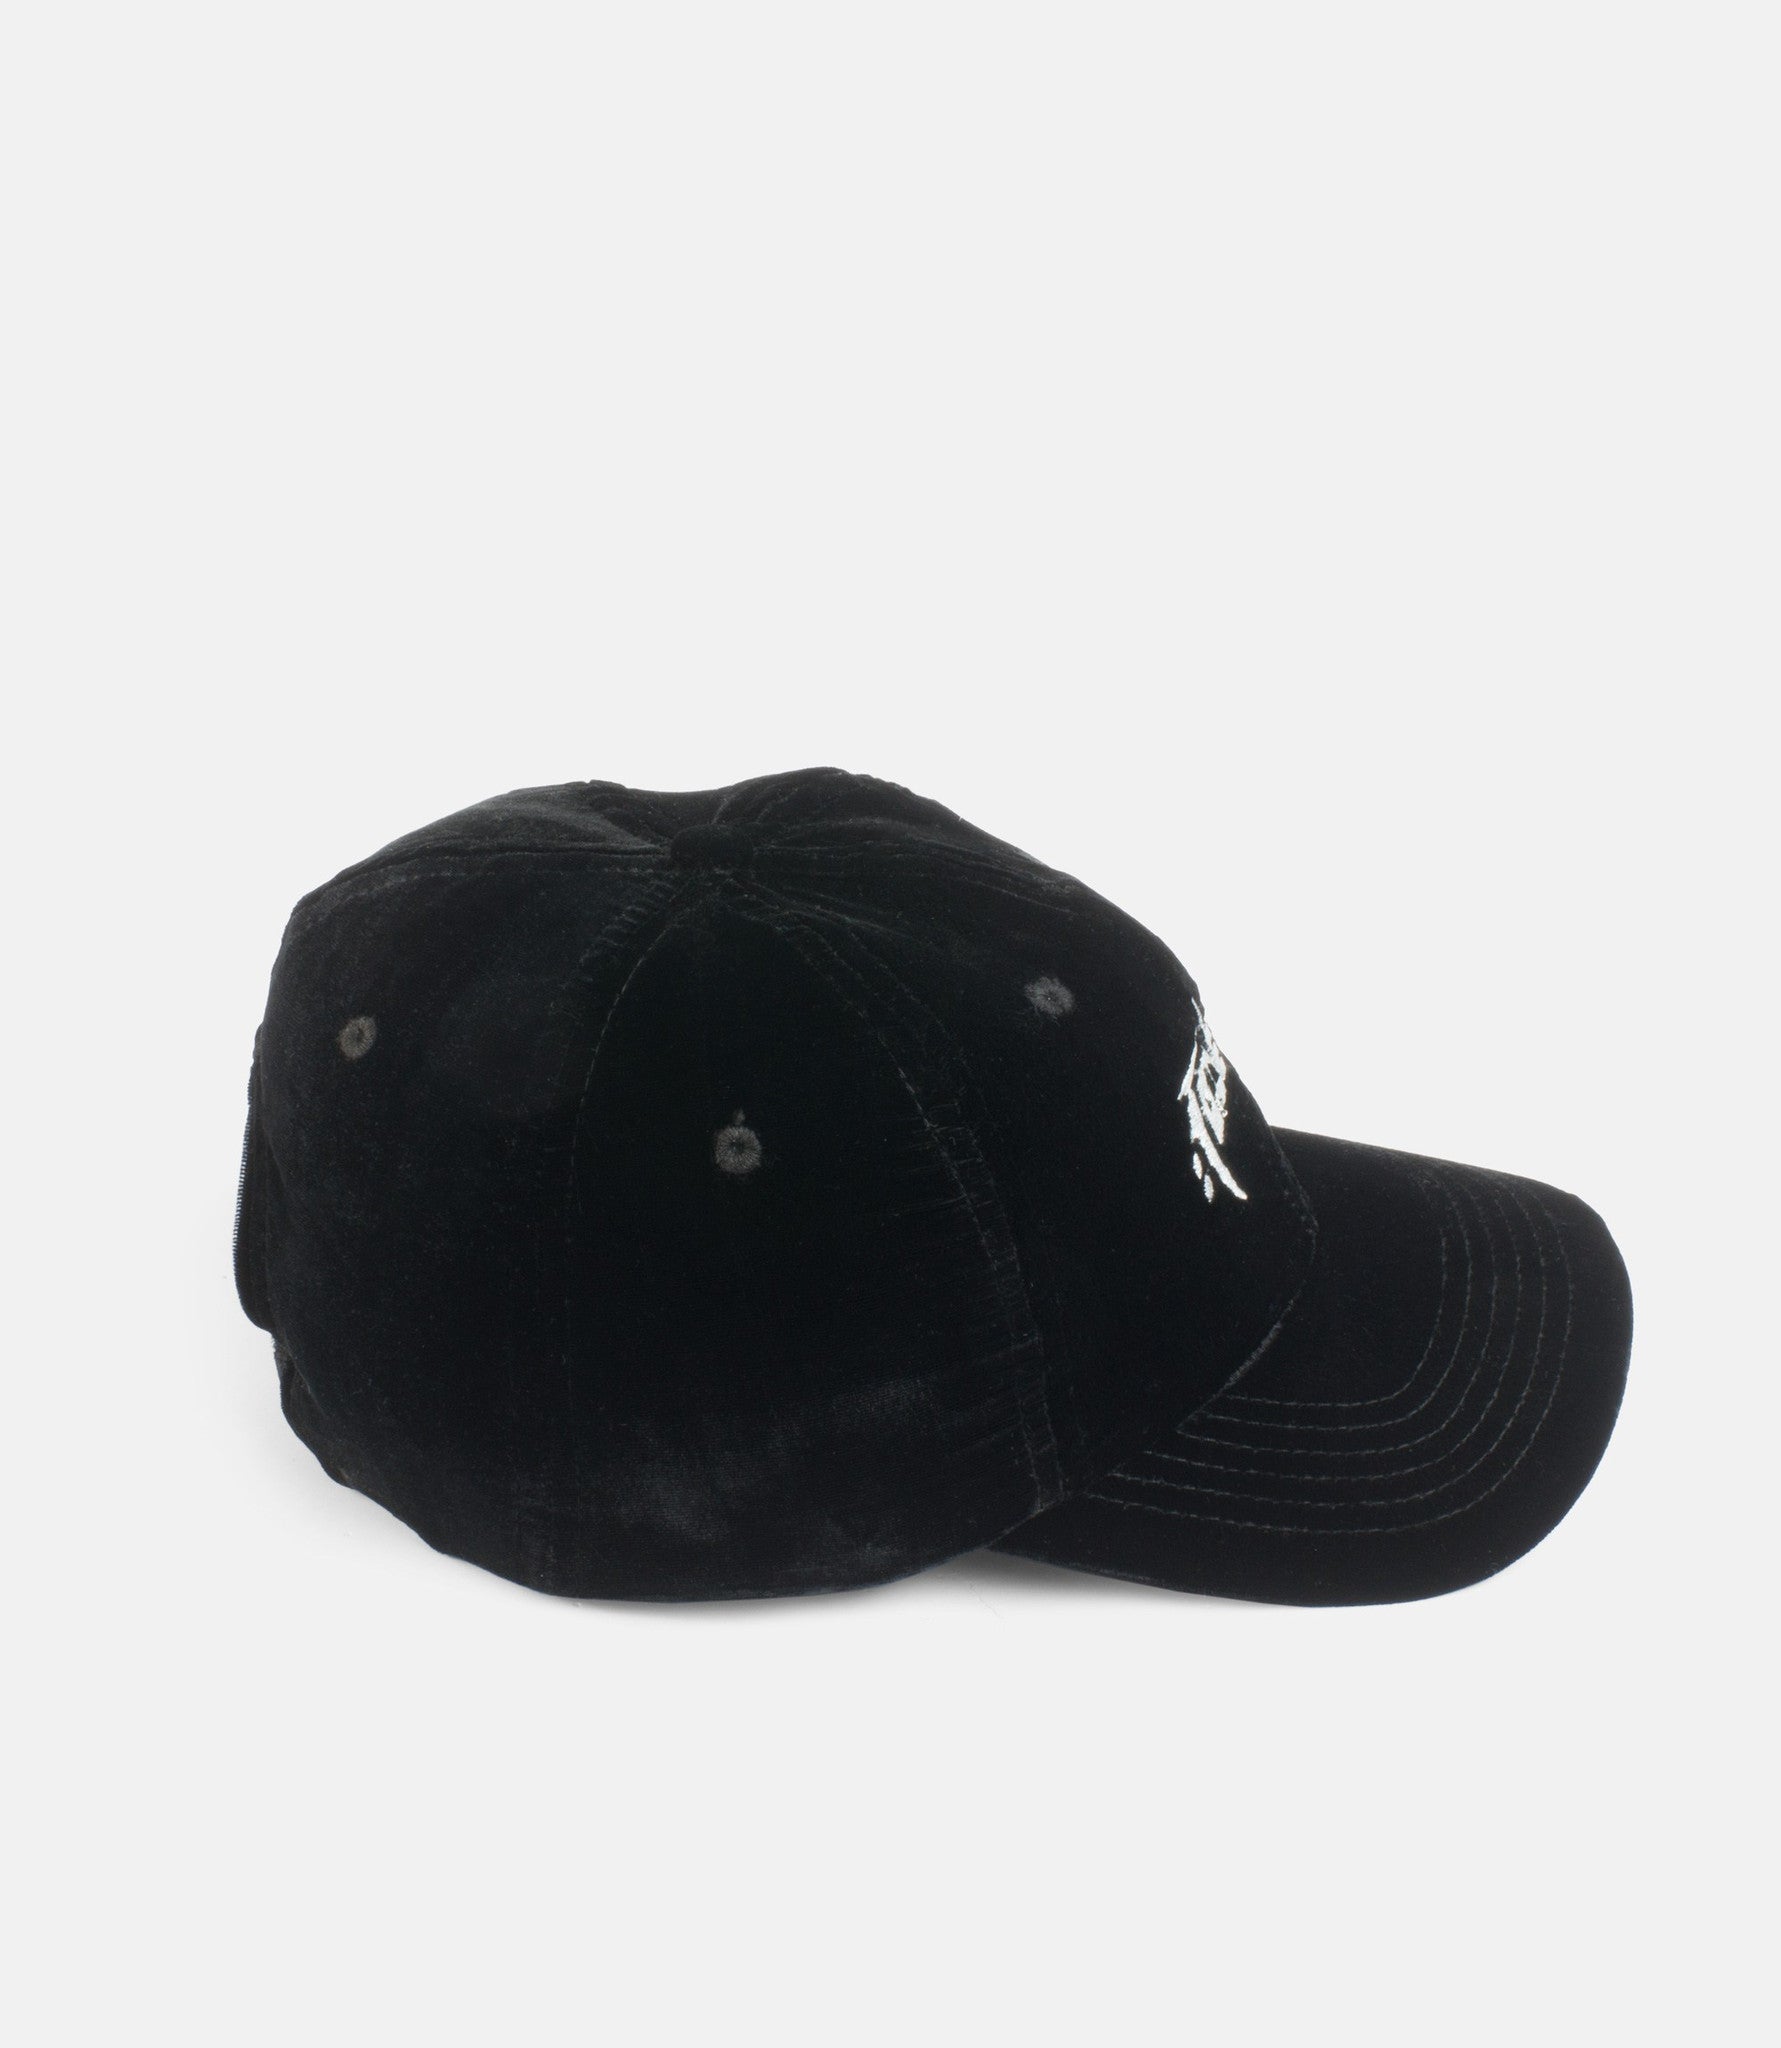 10Deep - Null & Void Roadie Hat, Black - The Giant Peach